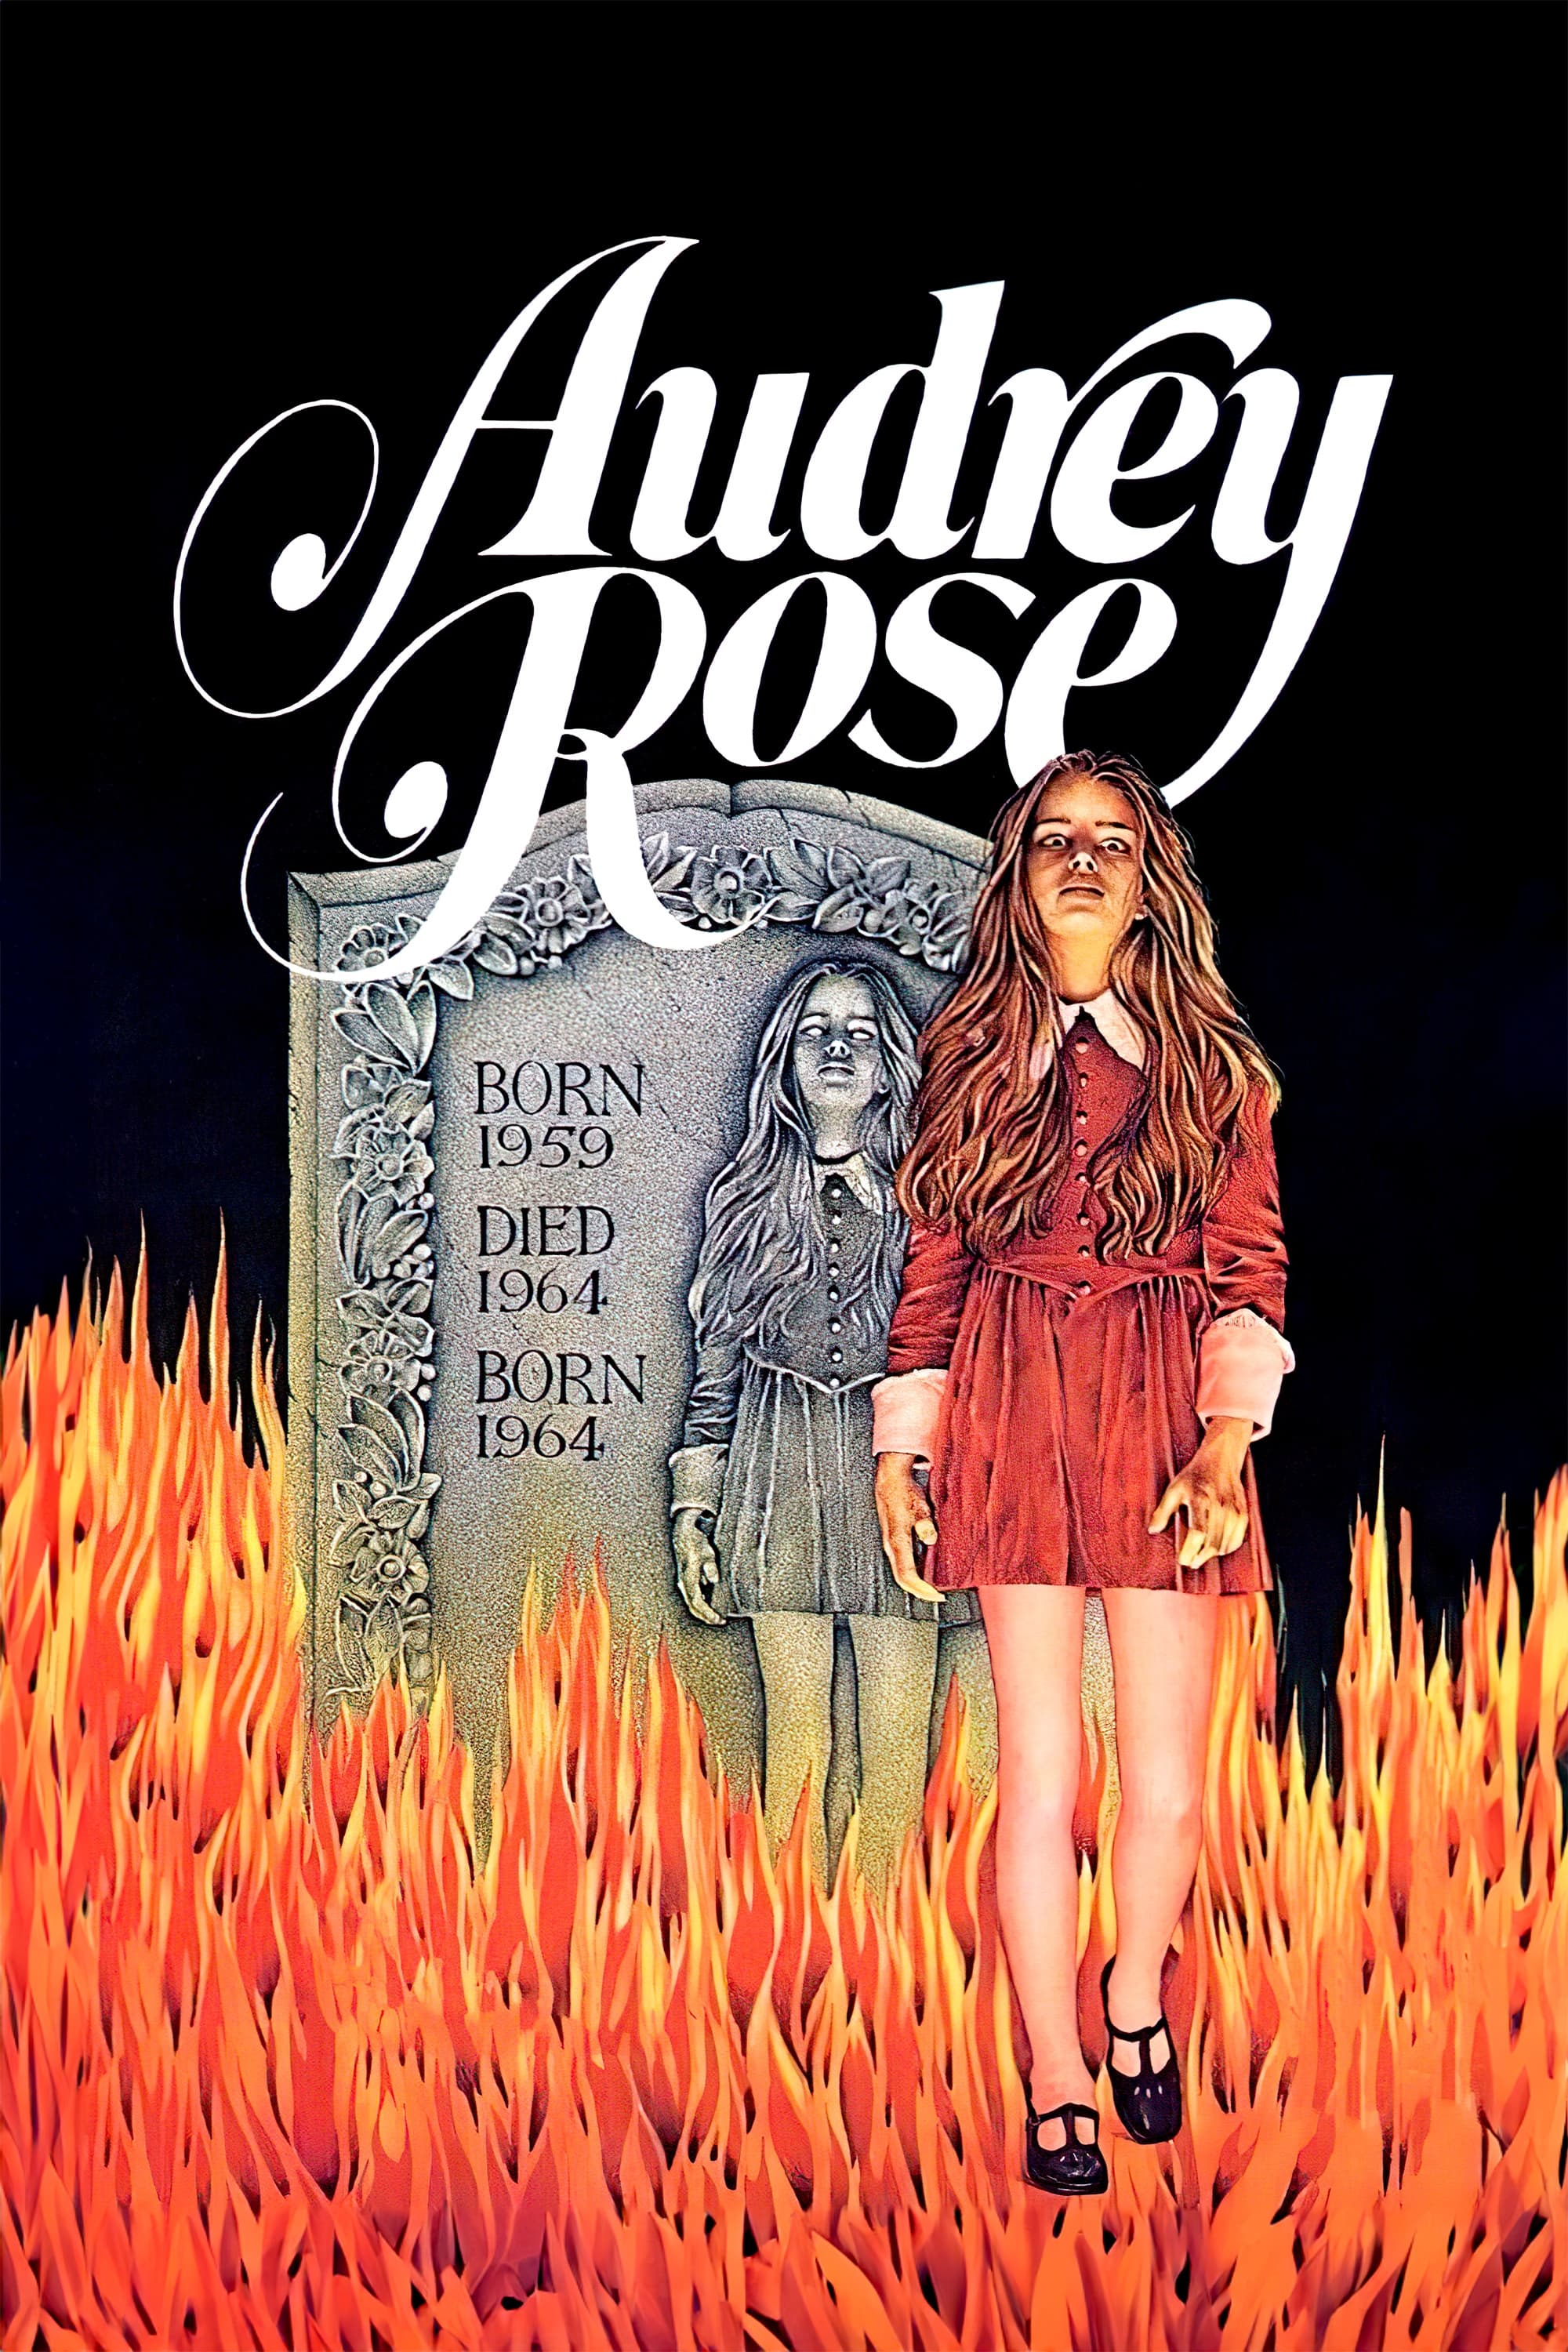 Las dos vidas de Audrey Rose (1977)